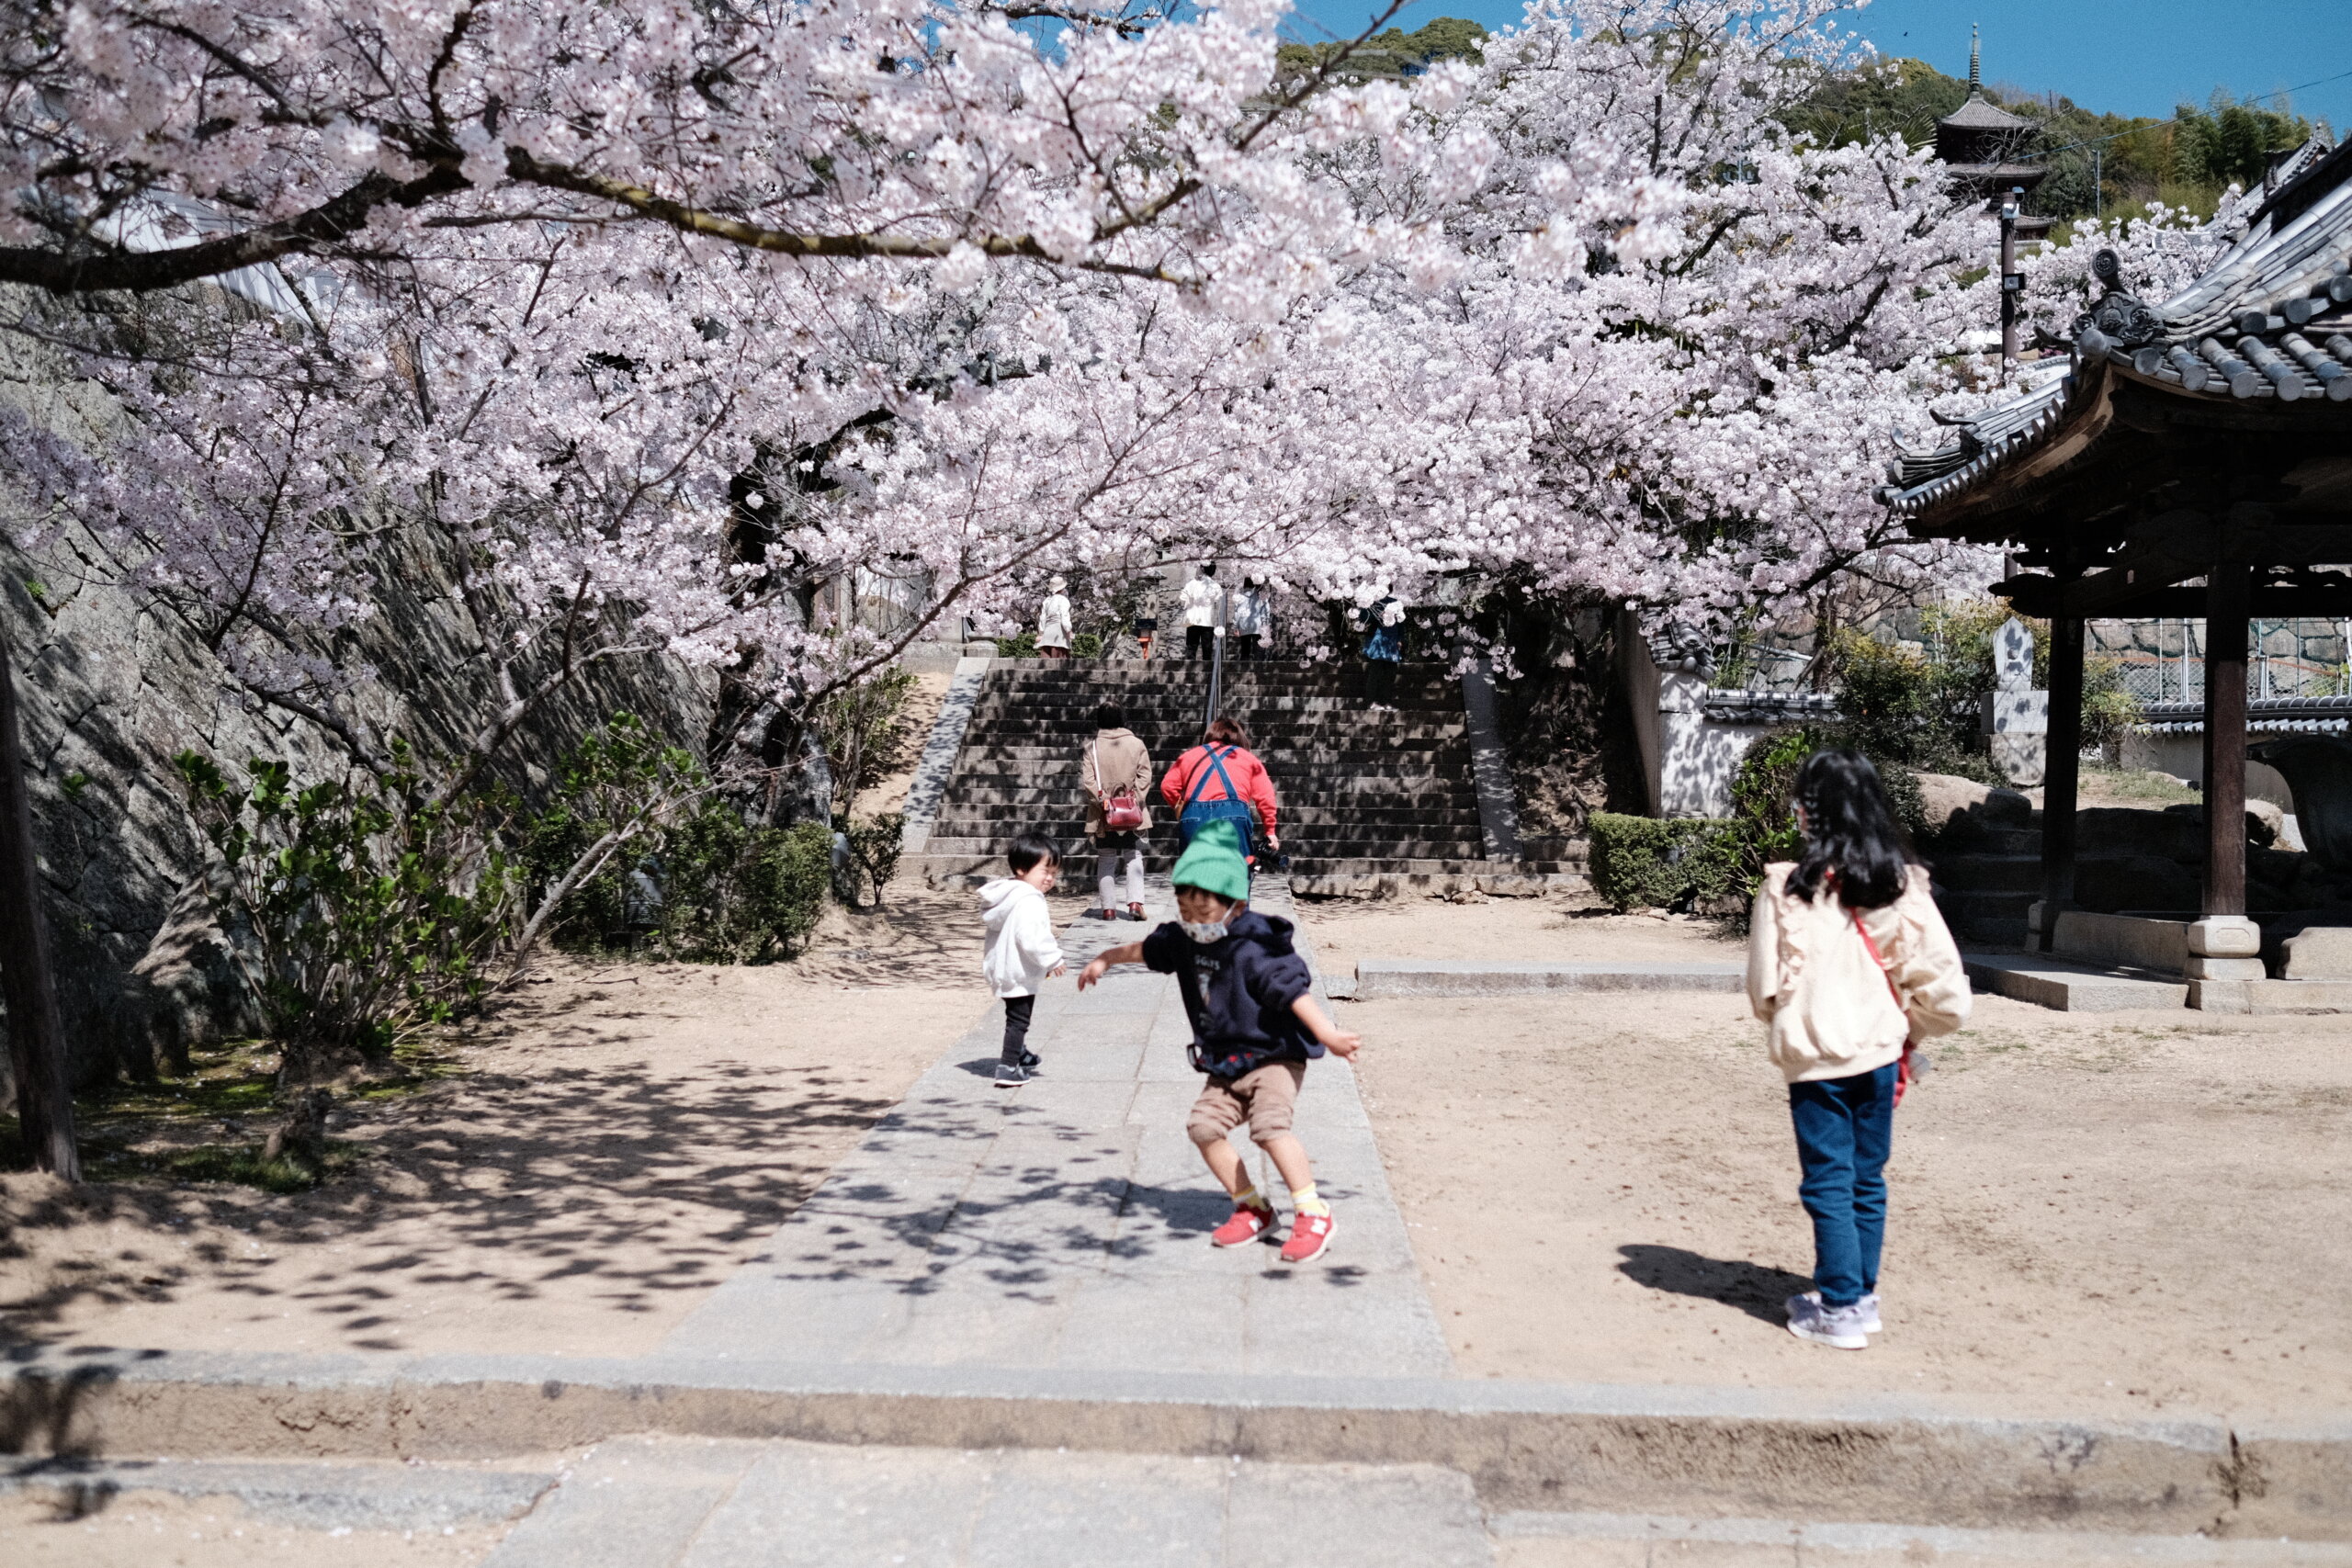 尾道の西国寺で見た桜が綺麗だった